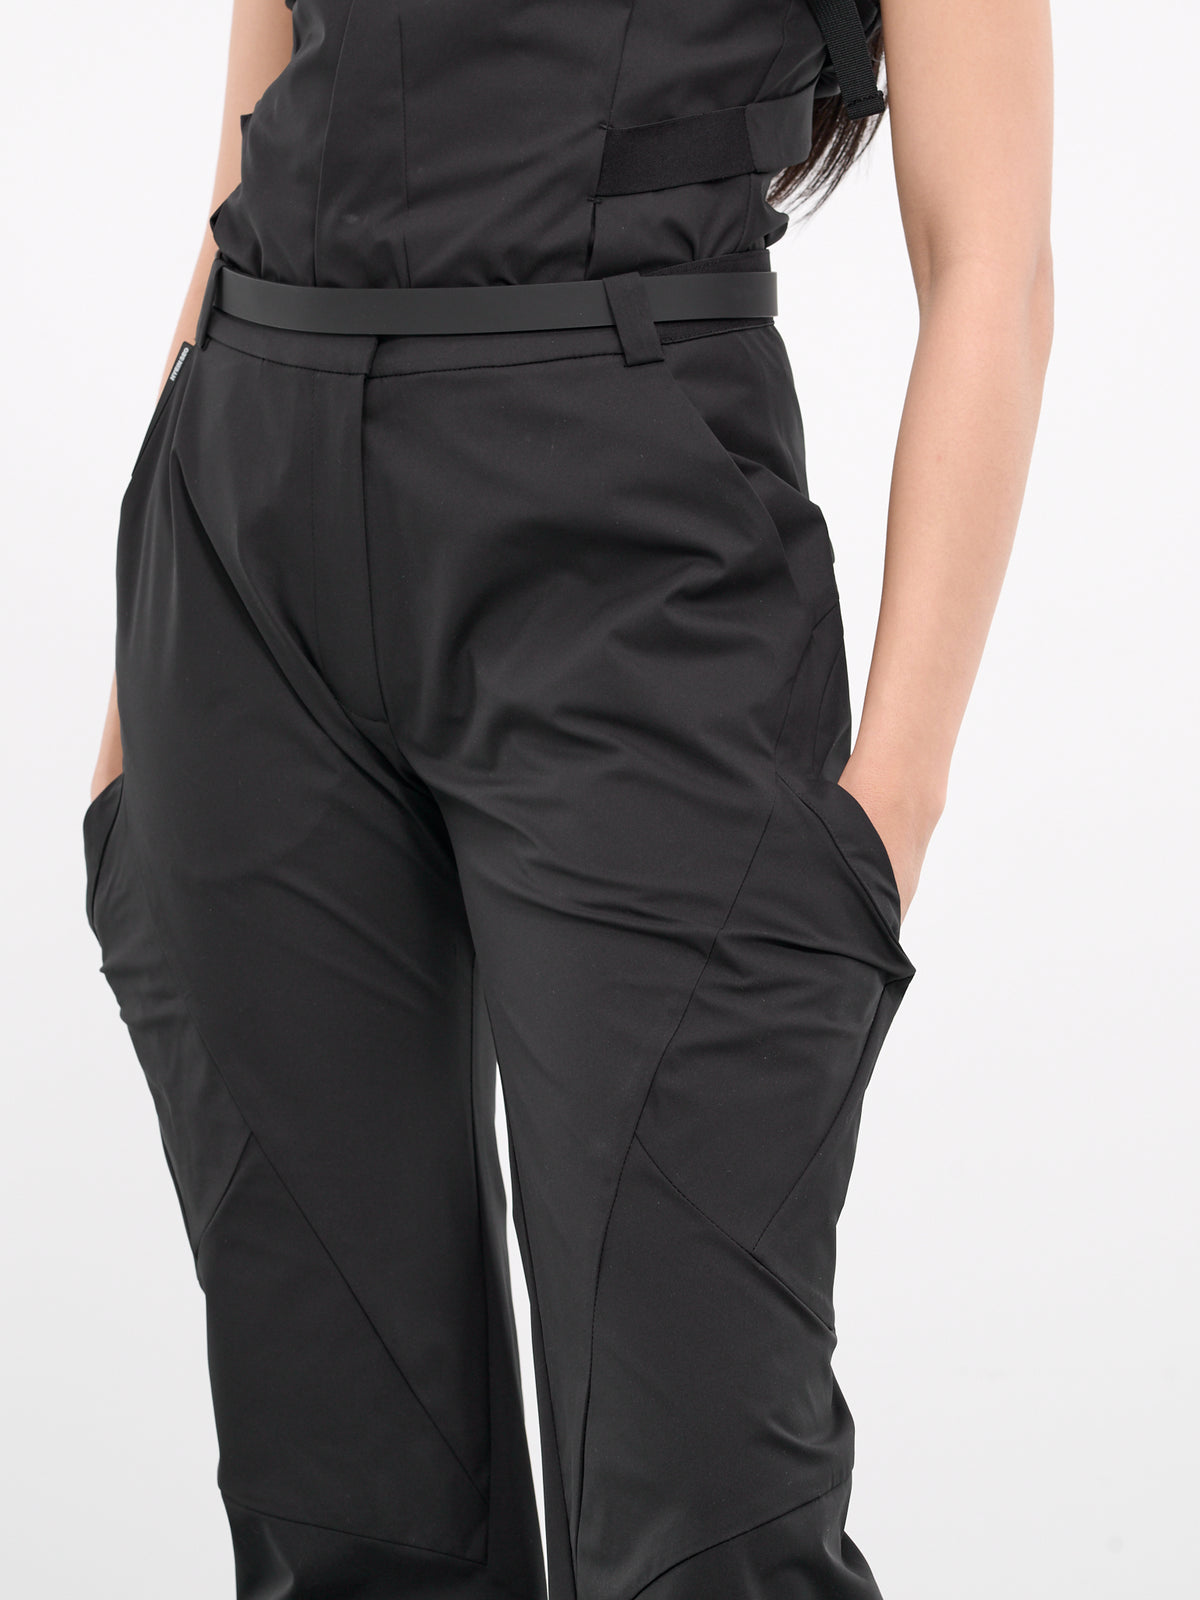 Belted Pocket Pants (PT6K-S24-BLACK)